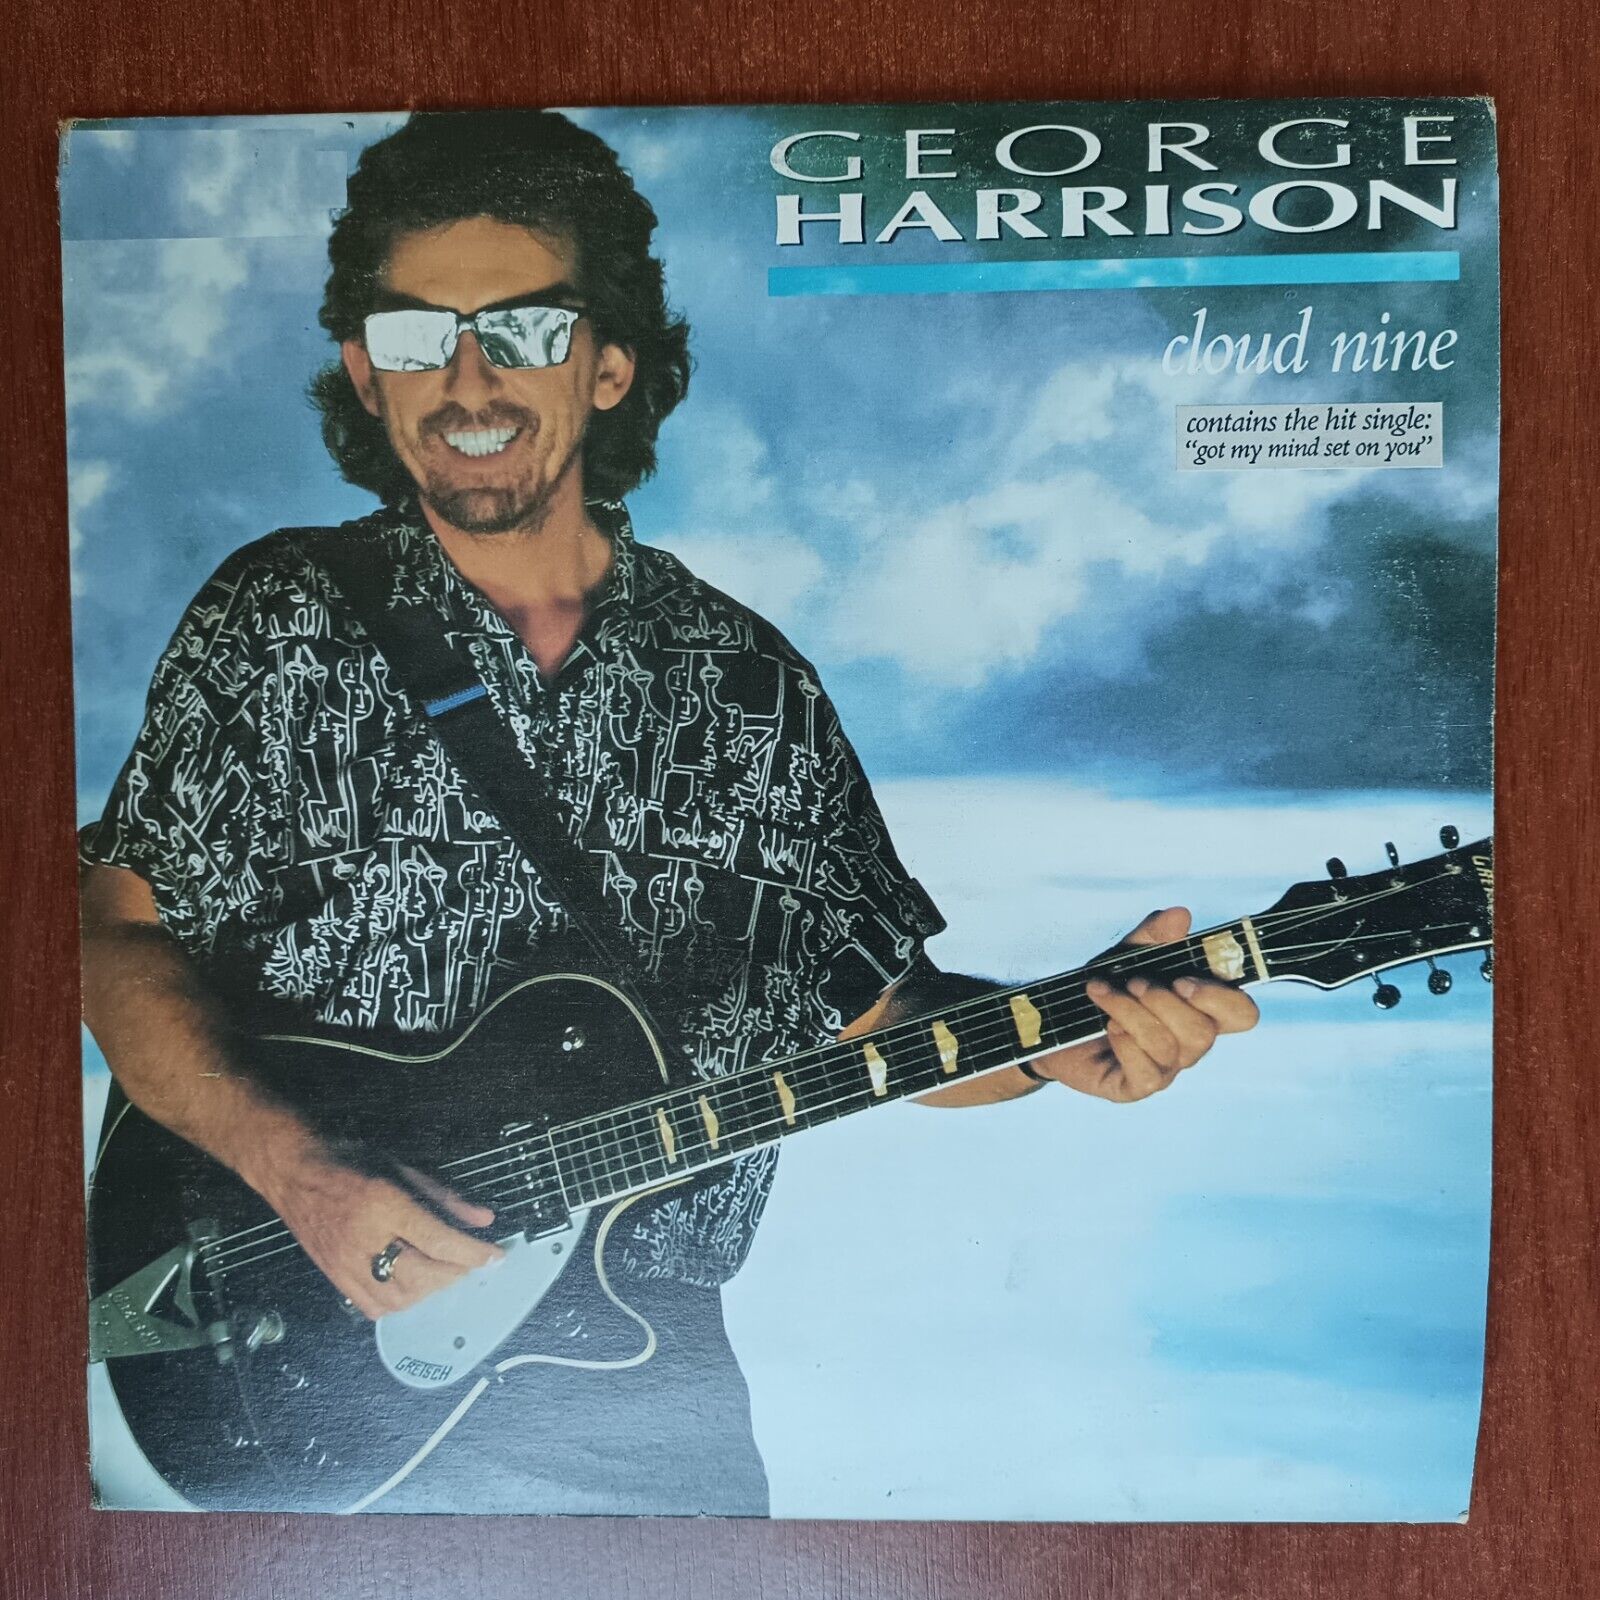 George Harrison – Cloud Nine [1987] Vinyl LP Pop Classic Rock Warner Bros.